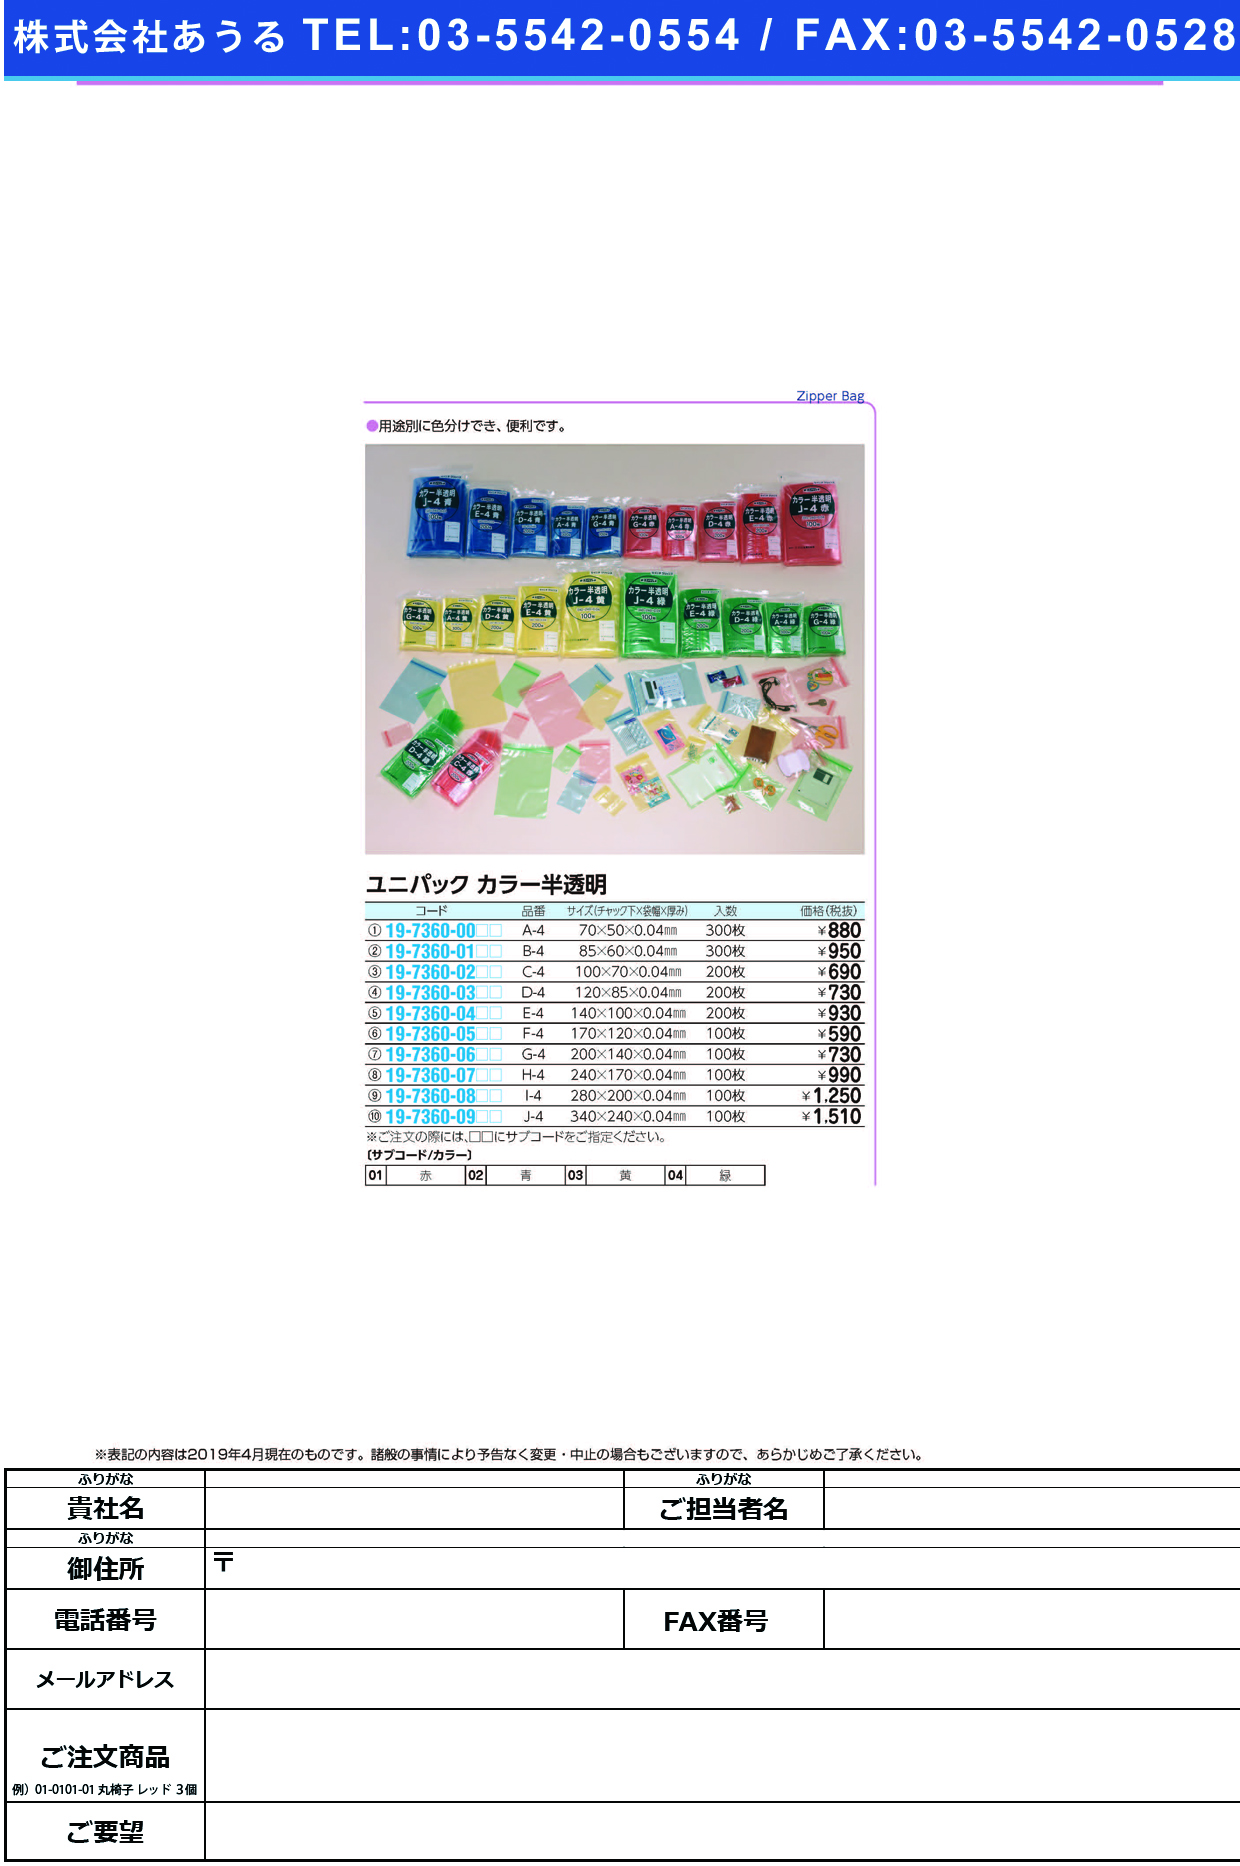 (19-7360-09)ユニパックカラー半透明 J-4(100ﾏｲｲﾘ) ﾕﾆﾊﾟｯｸｶﾗｰﾊﾝﾄｳﾒｲ 緑【1袋単位】【2019年カタログ商品】